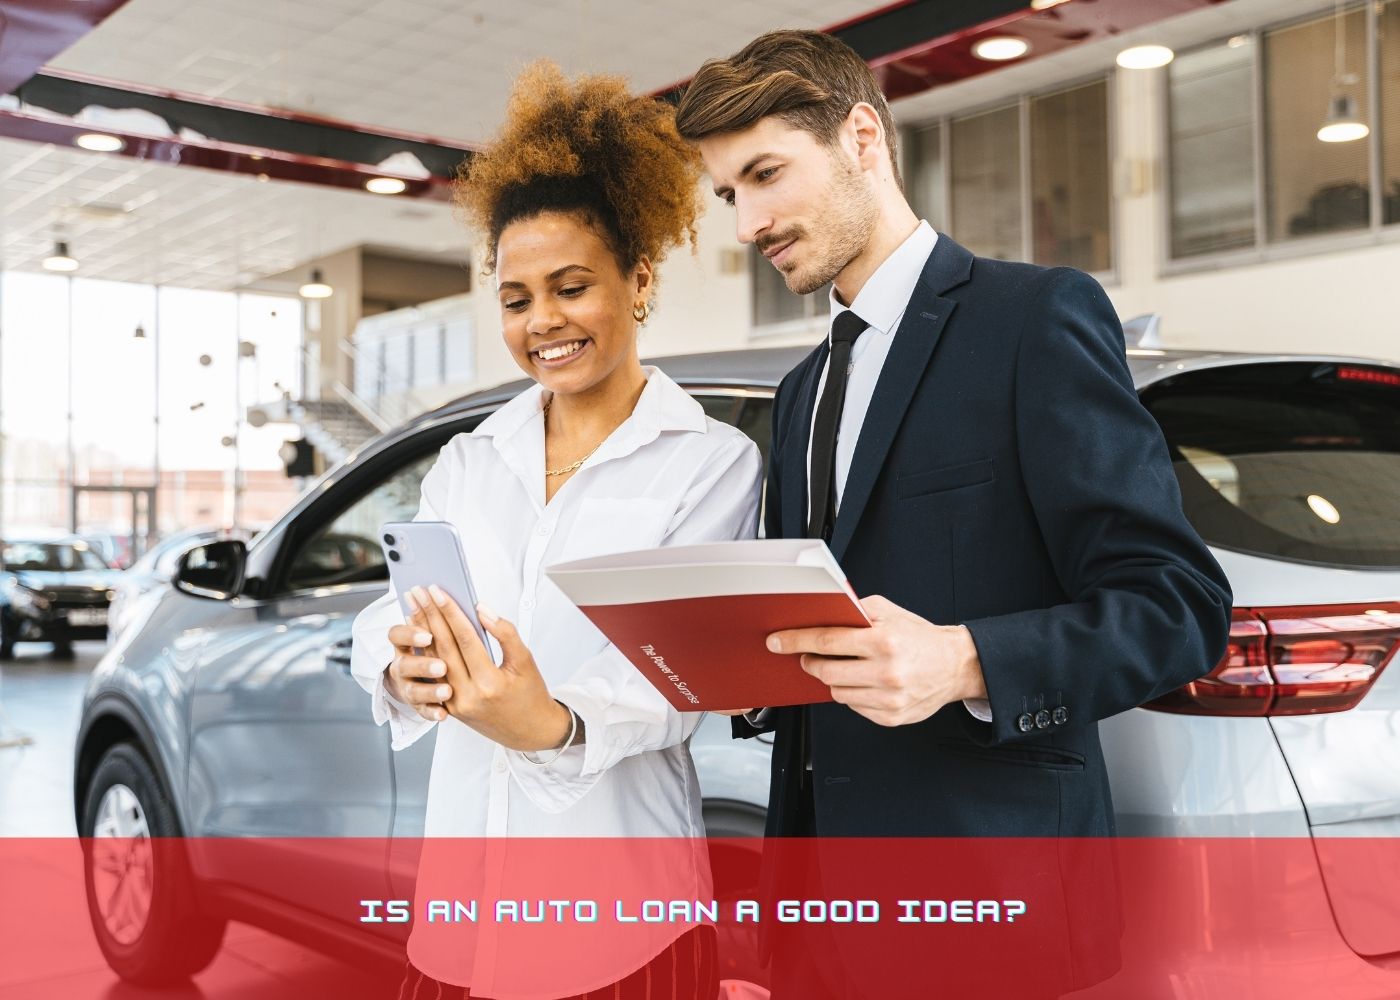 Is an Auto Loan a good idea? 